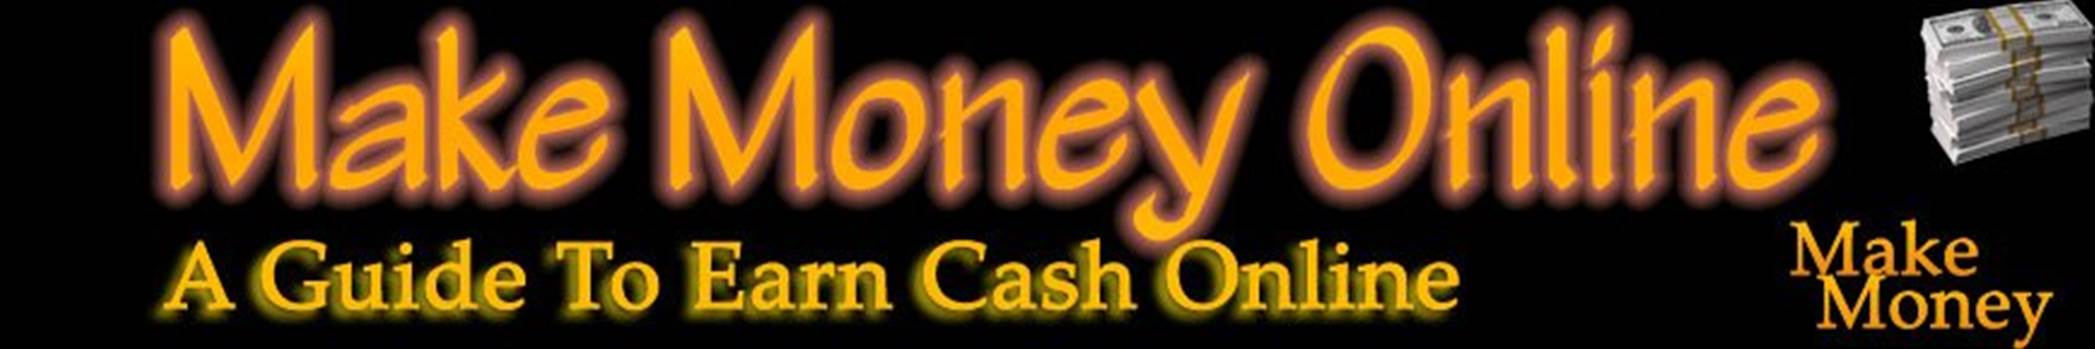 Make Money Banner 4.jpg - 